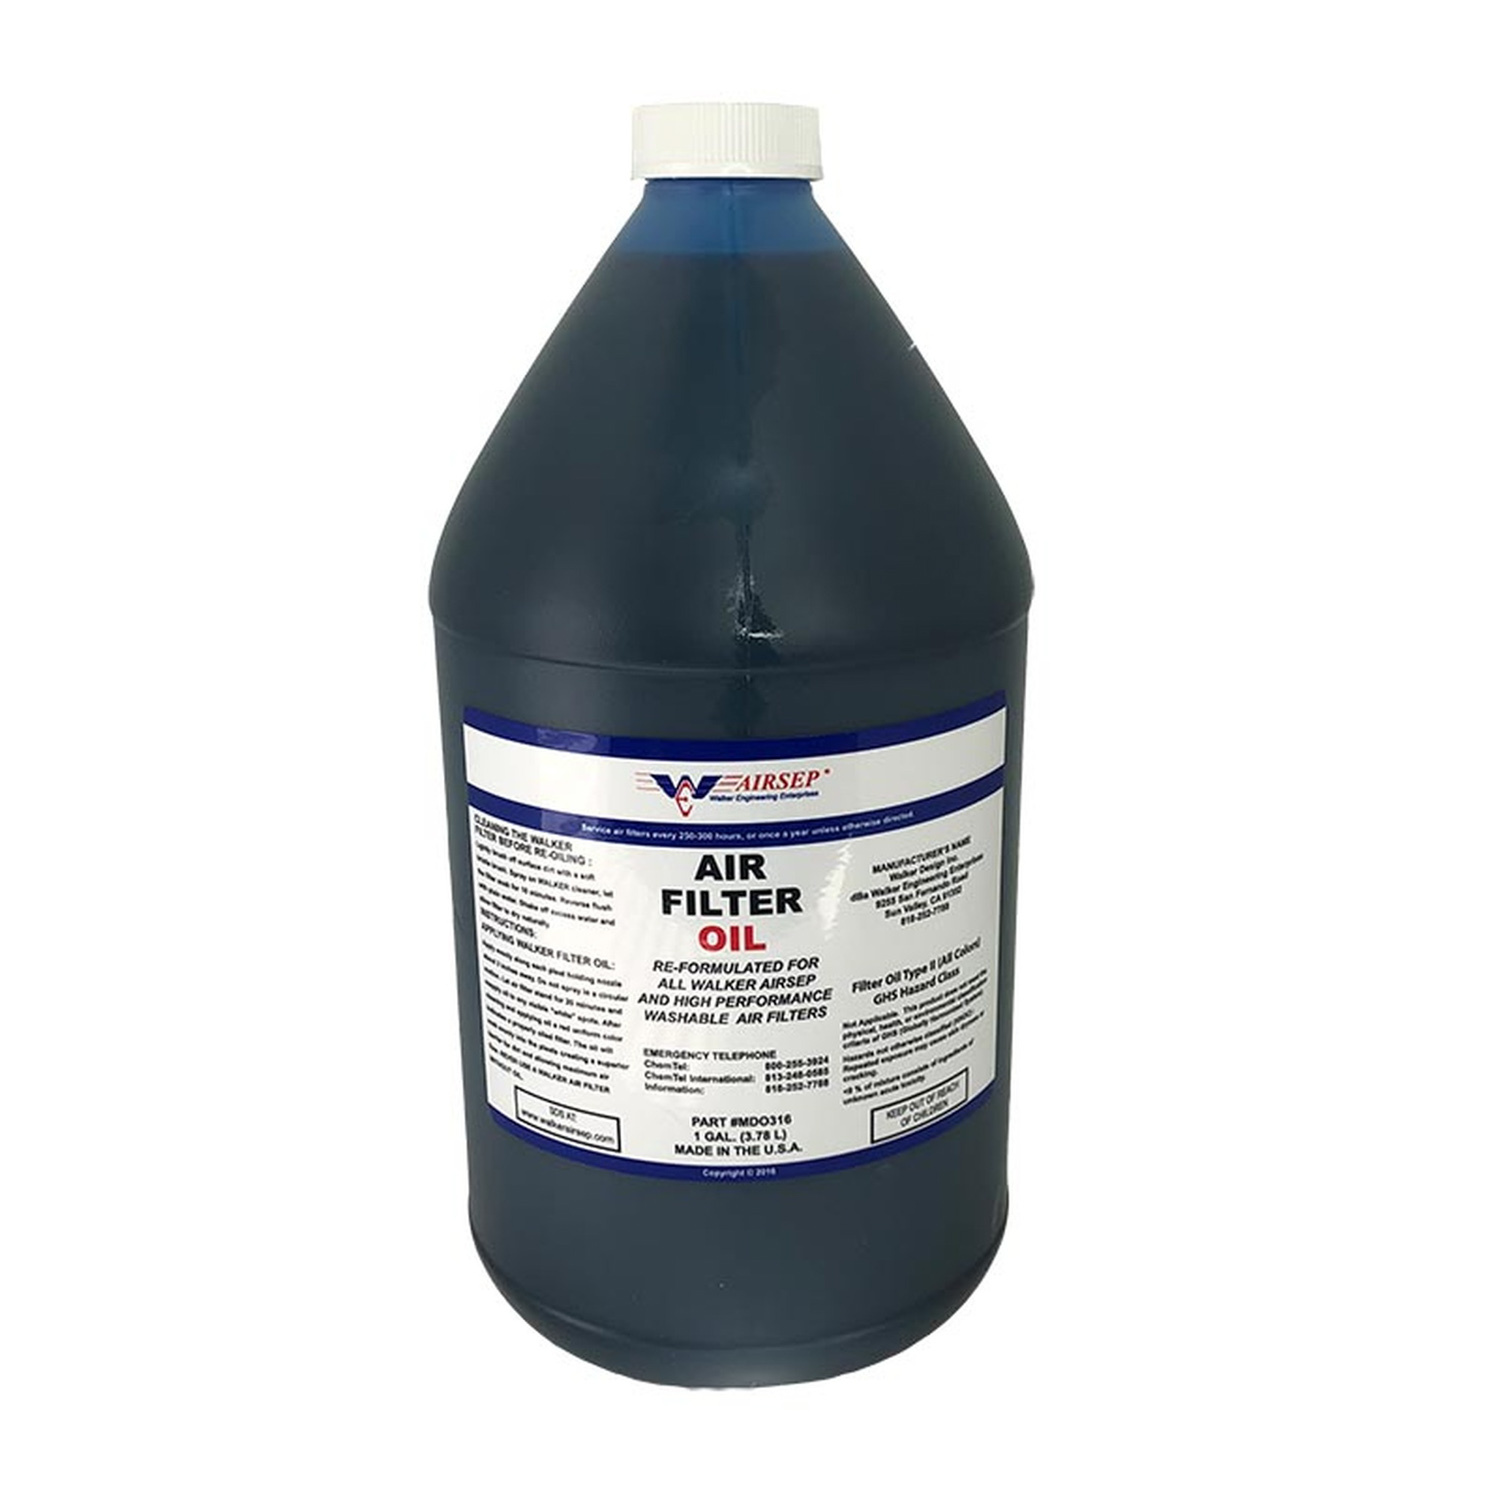 Walker Engineering 3000478 Air Filter Oil, Blue, 1 gal Bottle, Each